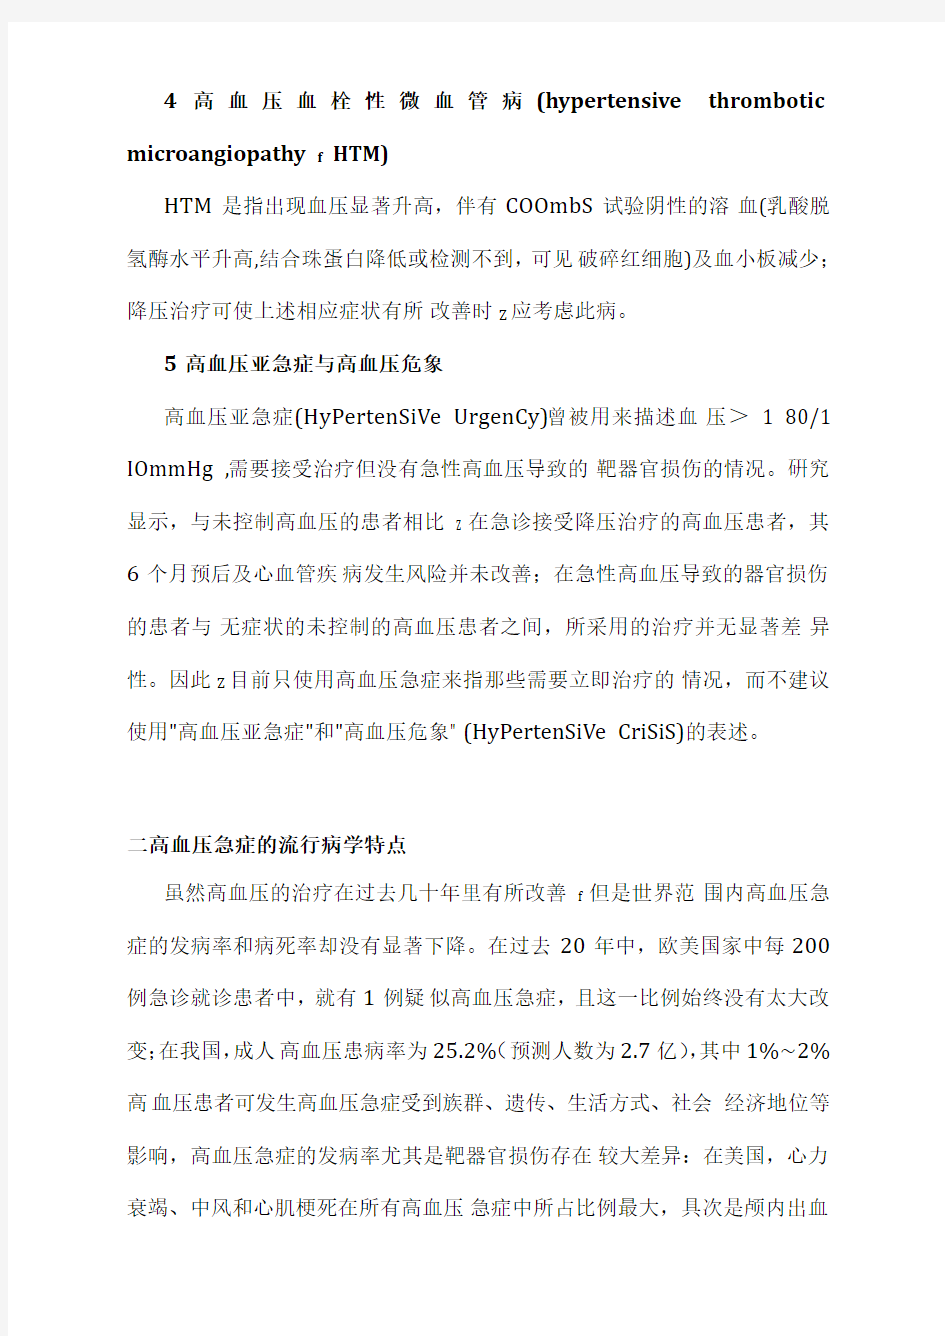 2020中国高血压急症诊治规范(完整版)